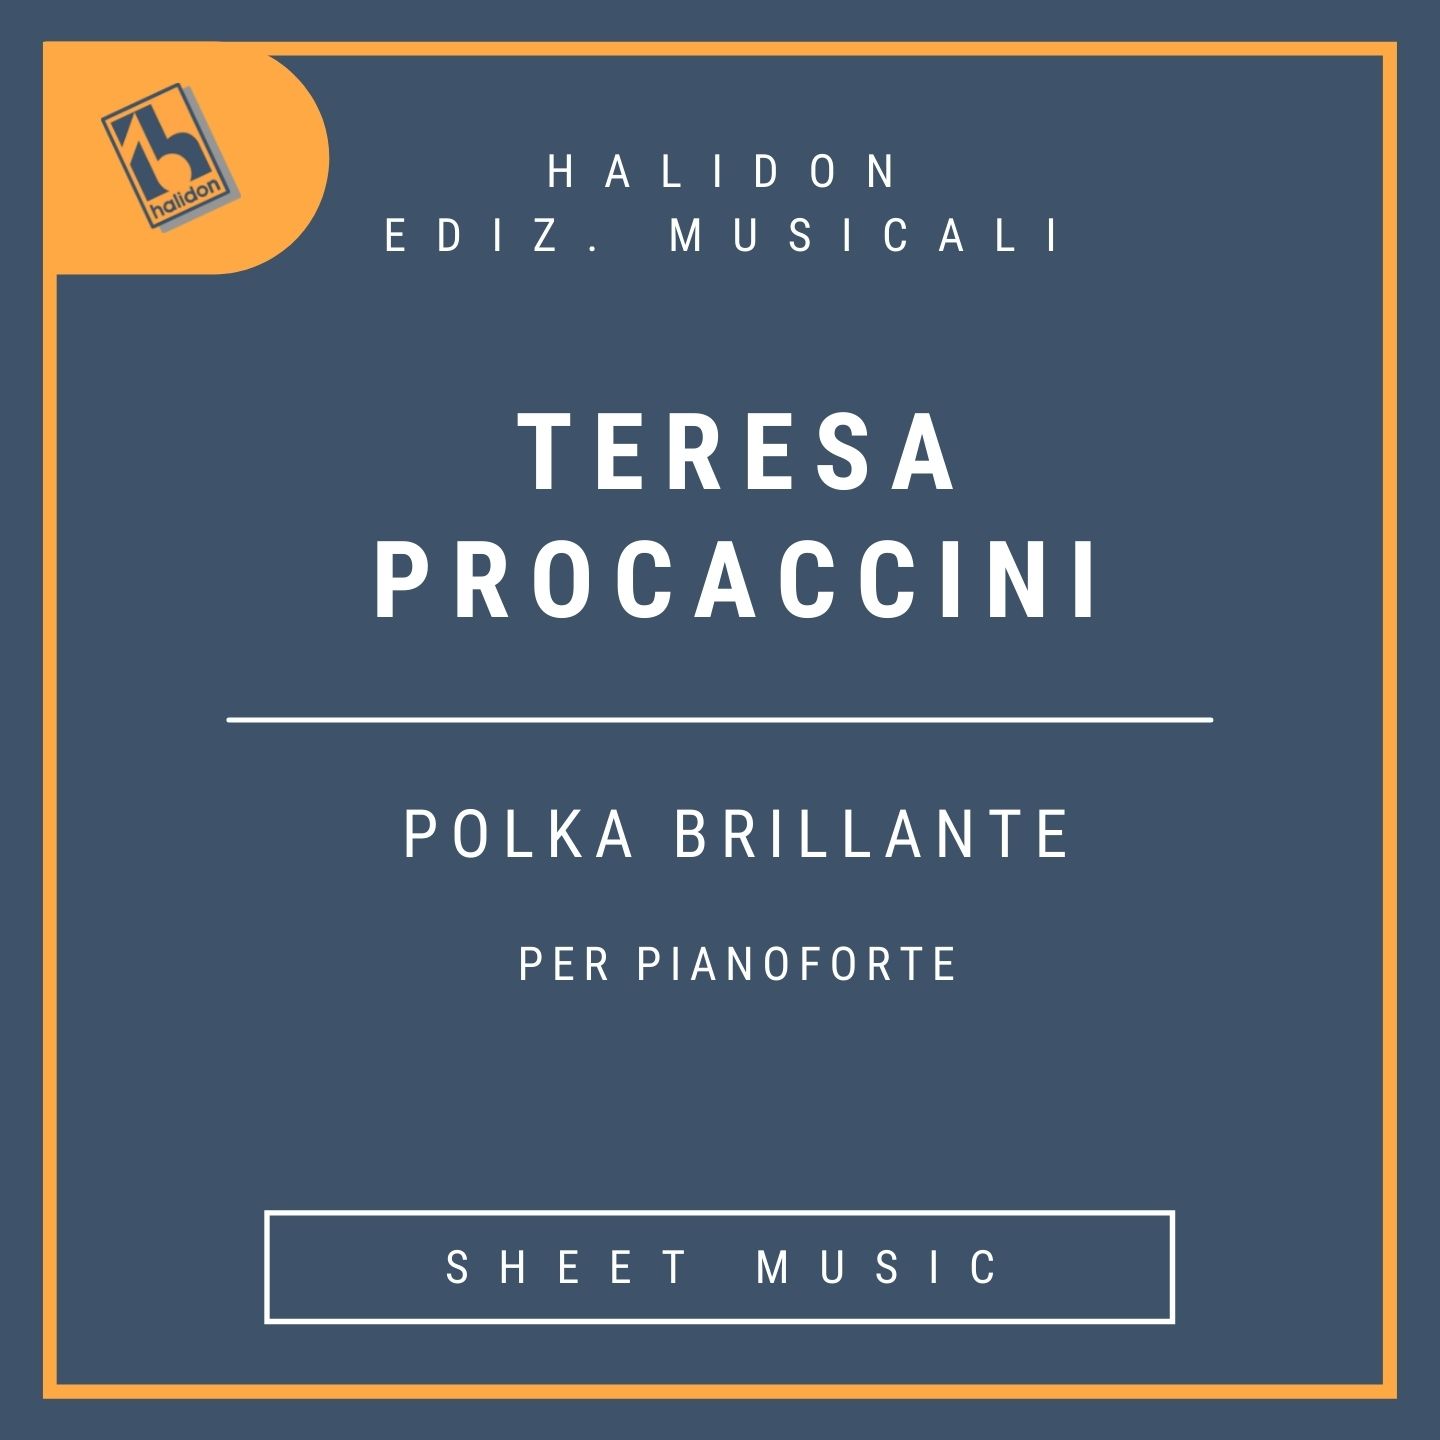 Teresa Procaccini - Polka brillante